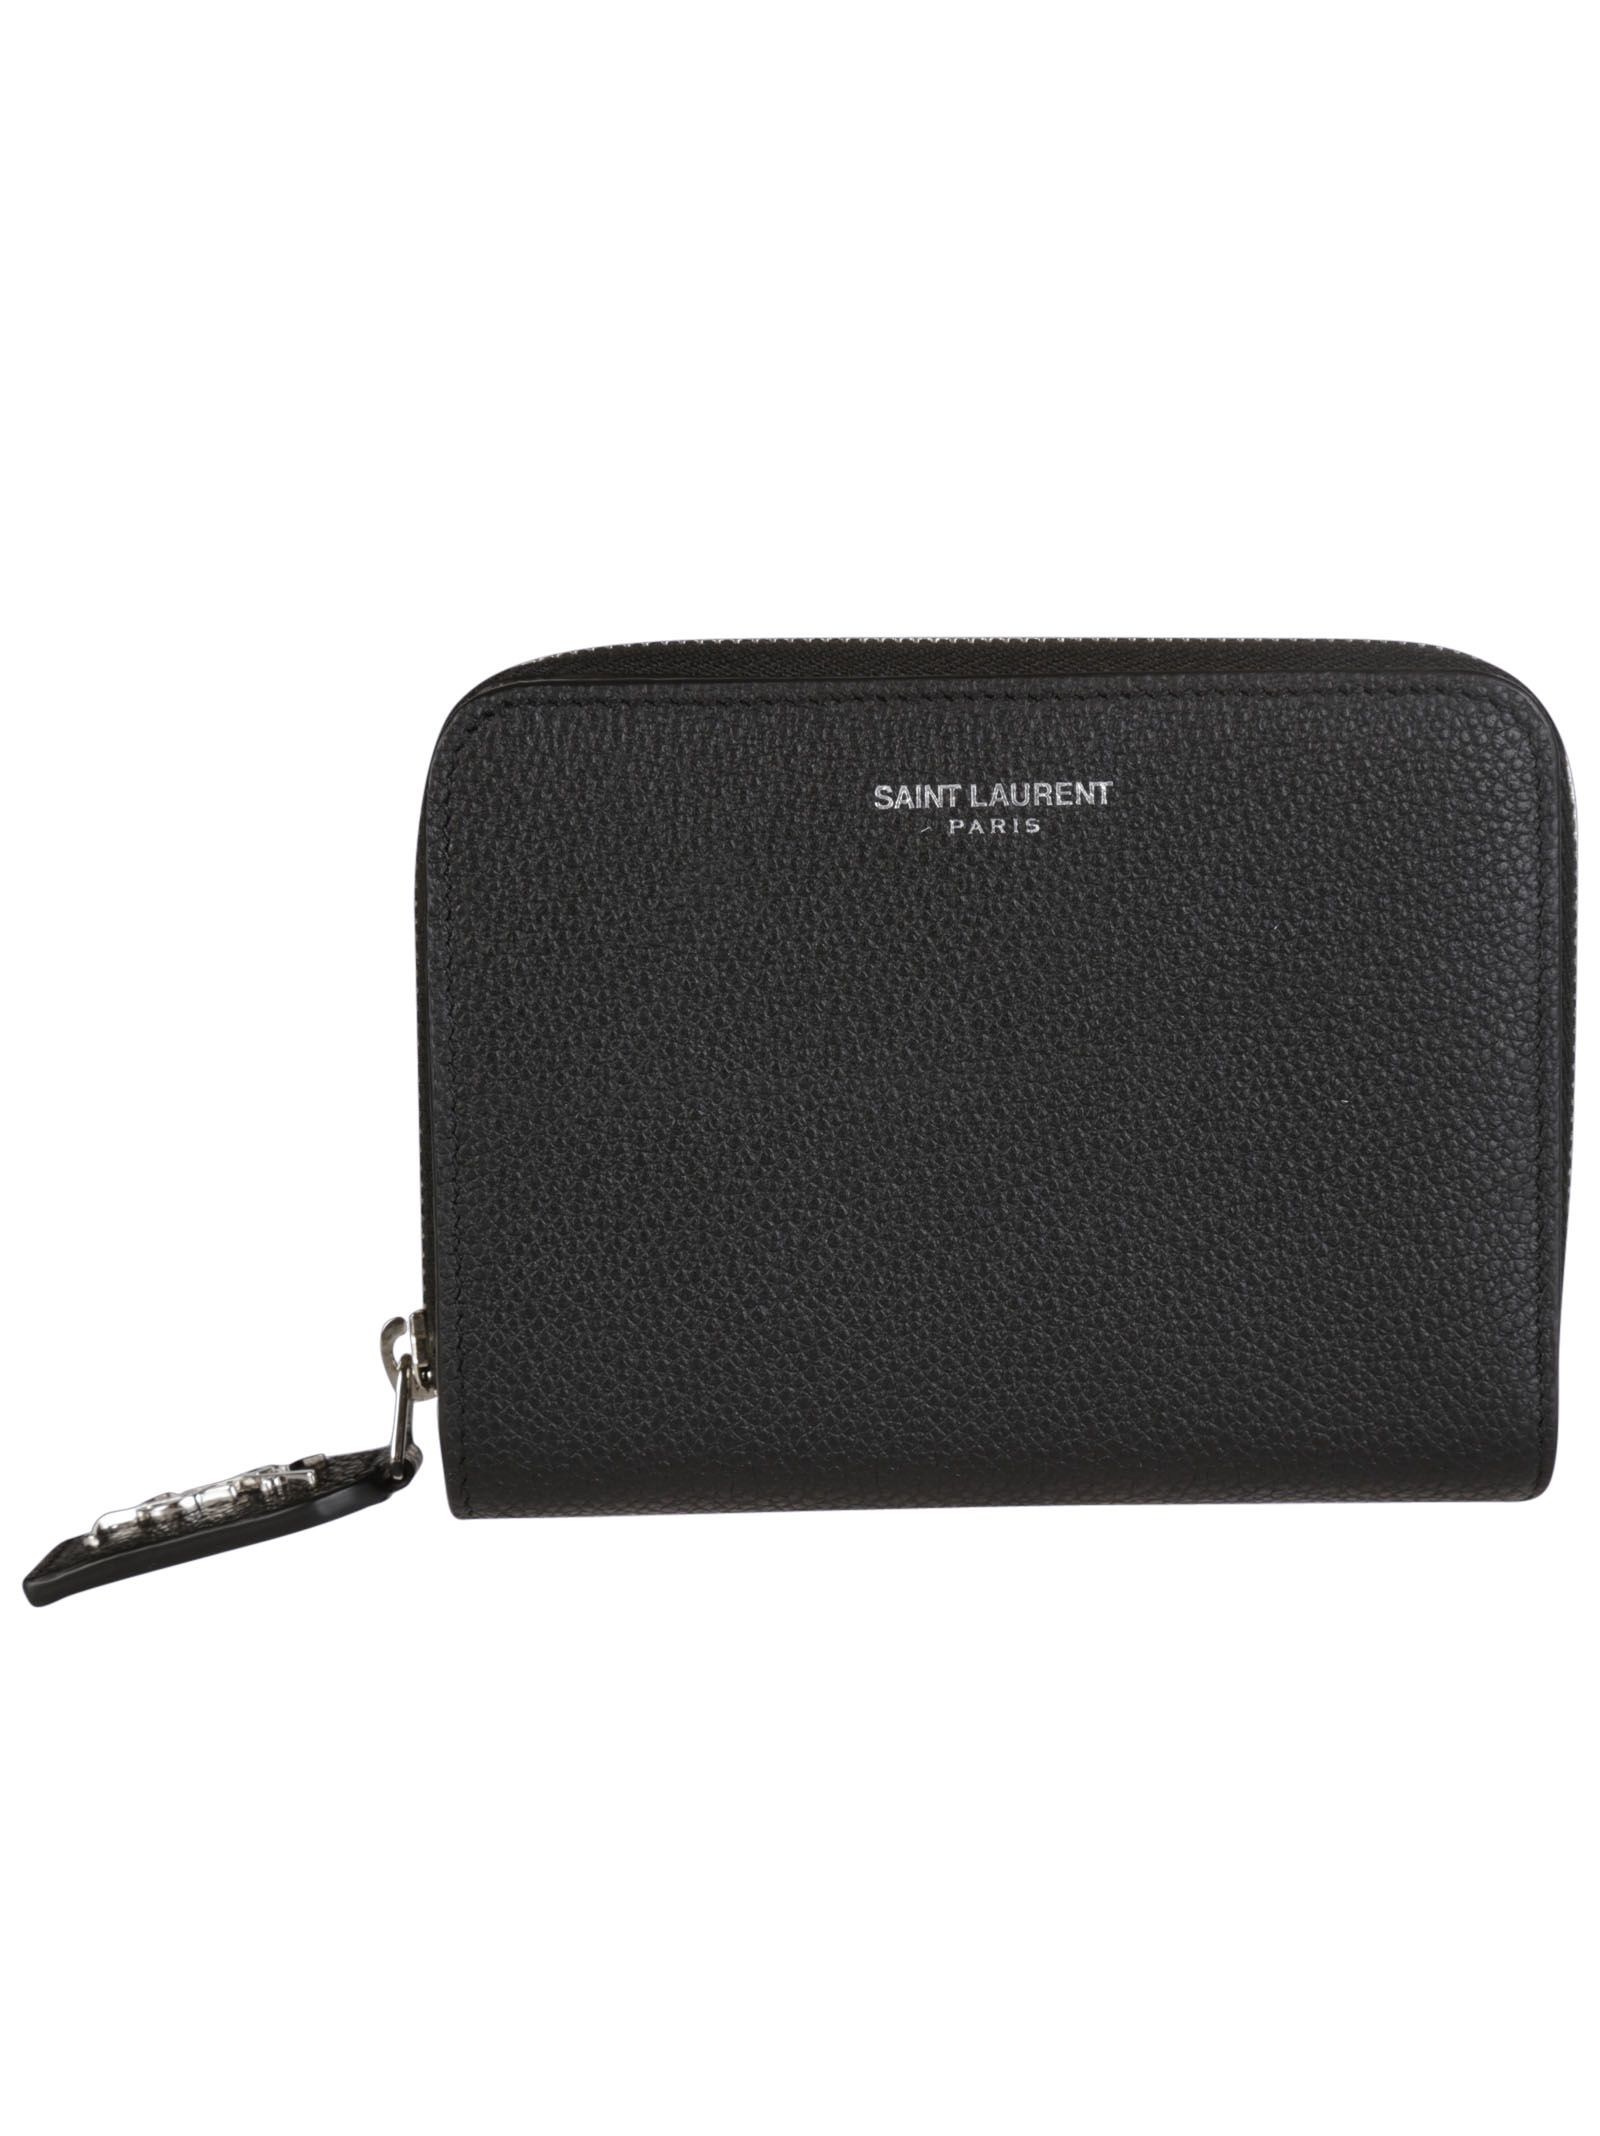 Saint Laurent - Saint Laurent Rive Gauche Small Zip Around Wallet - Black, Women&#39;s Wallets | Italist